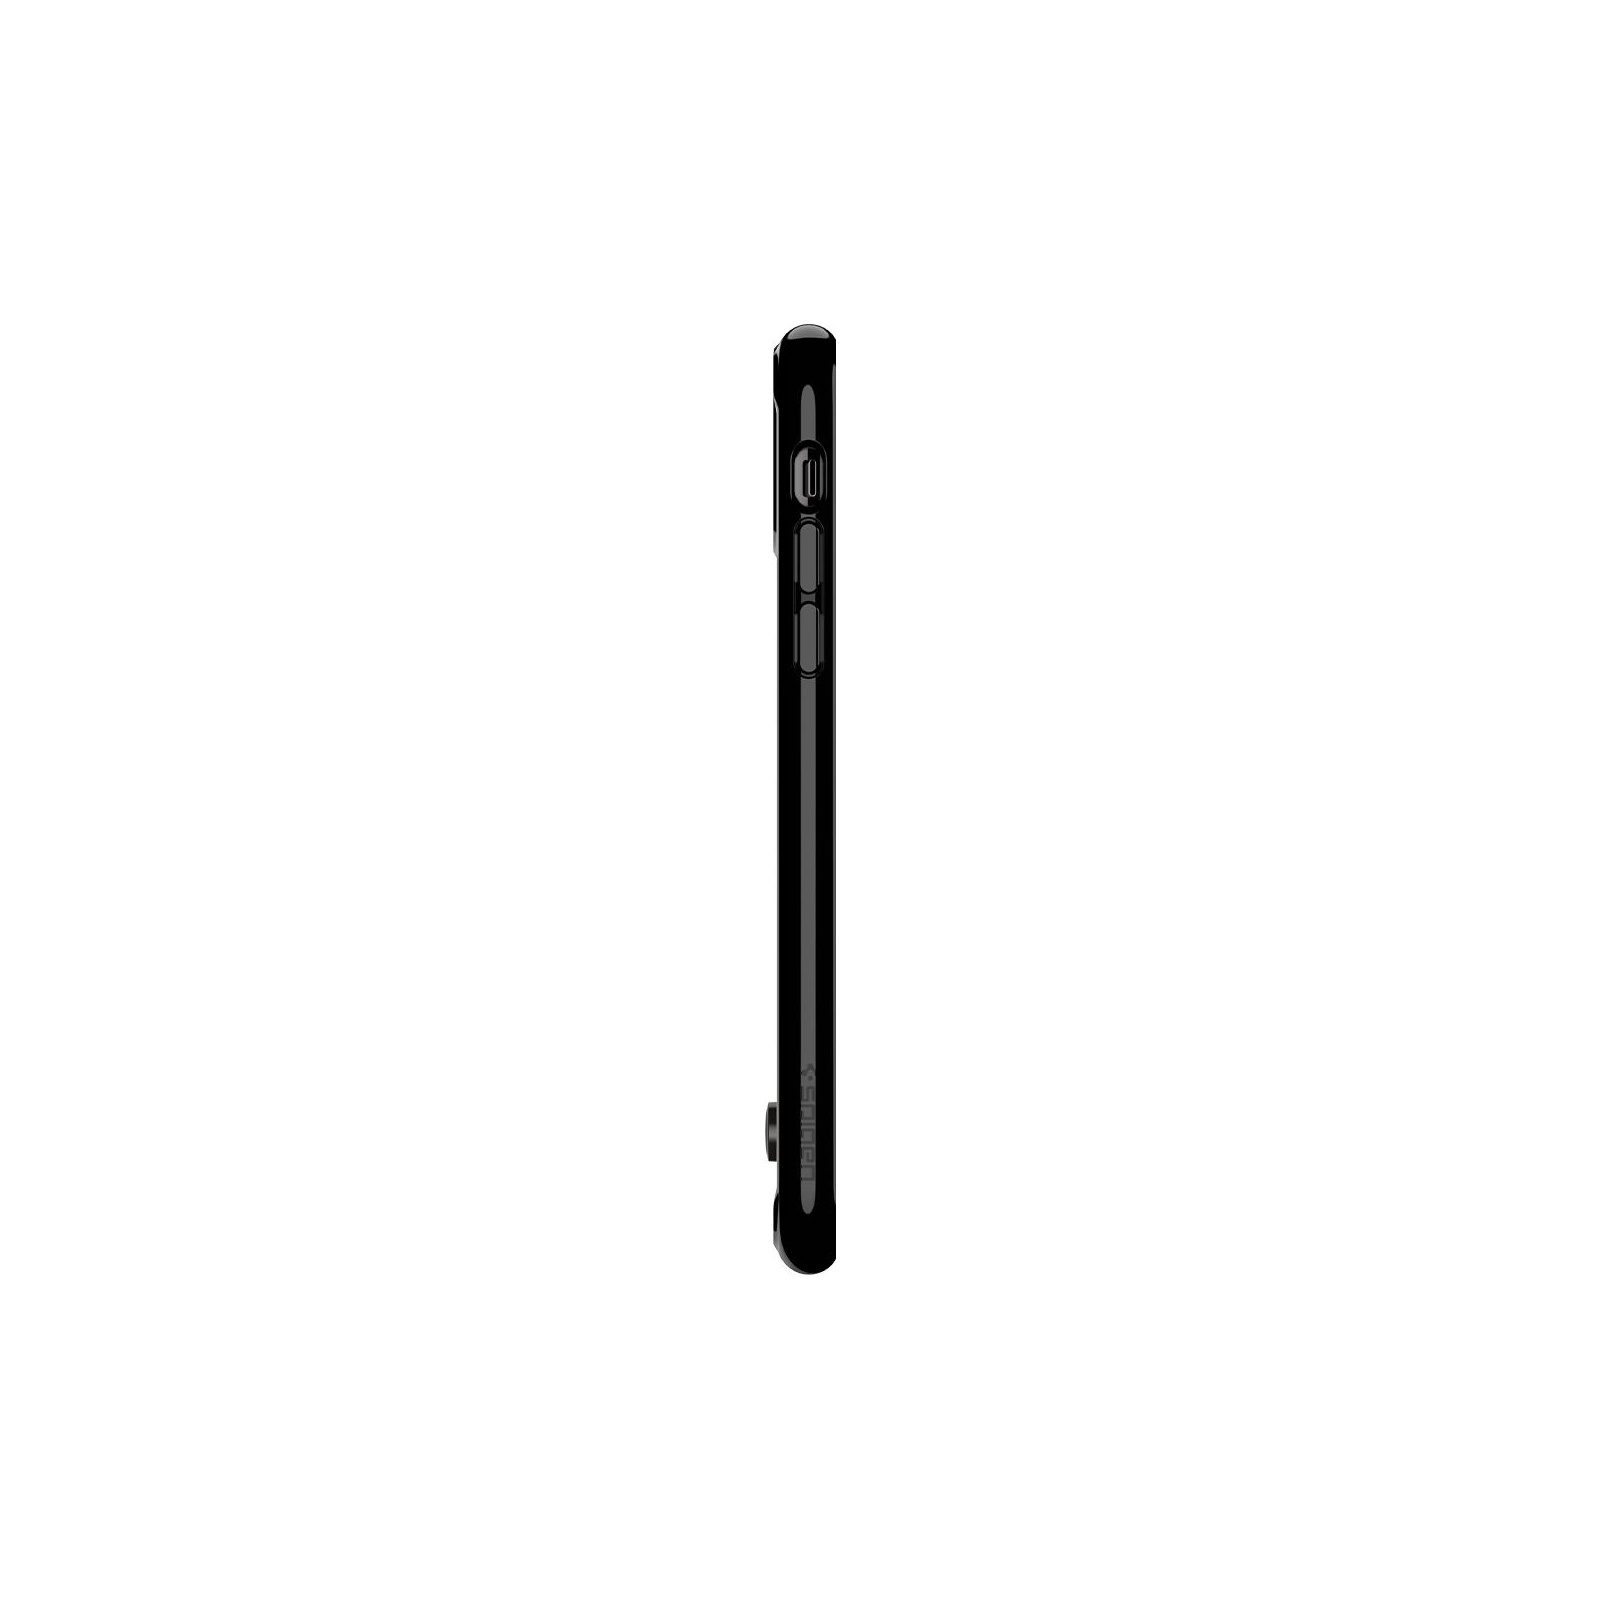 Чехол для мобильного телефона Spigen iPhone 11 Pro Max Ultra Hybrid S, Jet Black (075CS27138) изображение 3